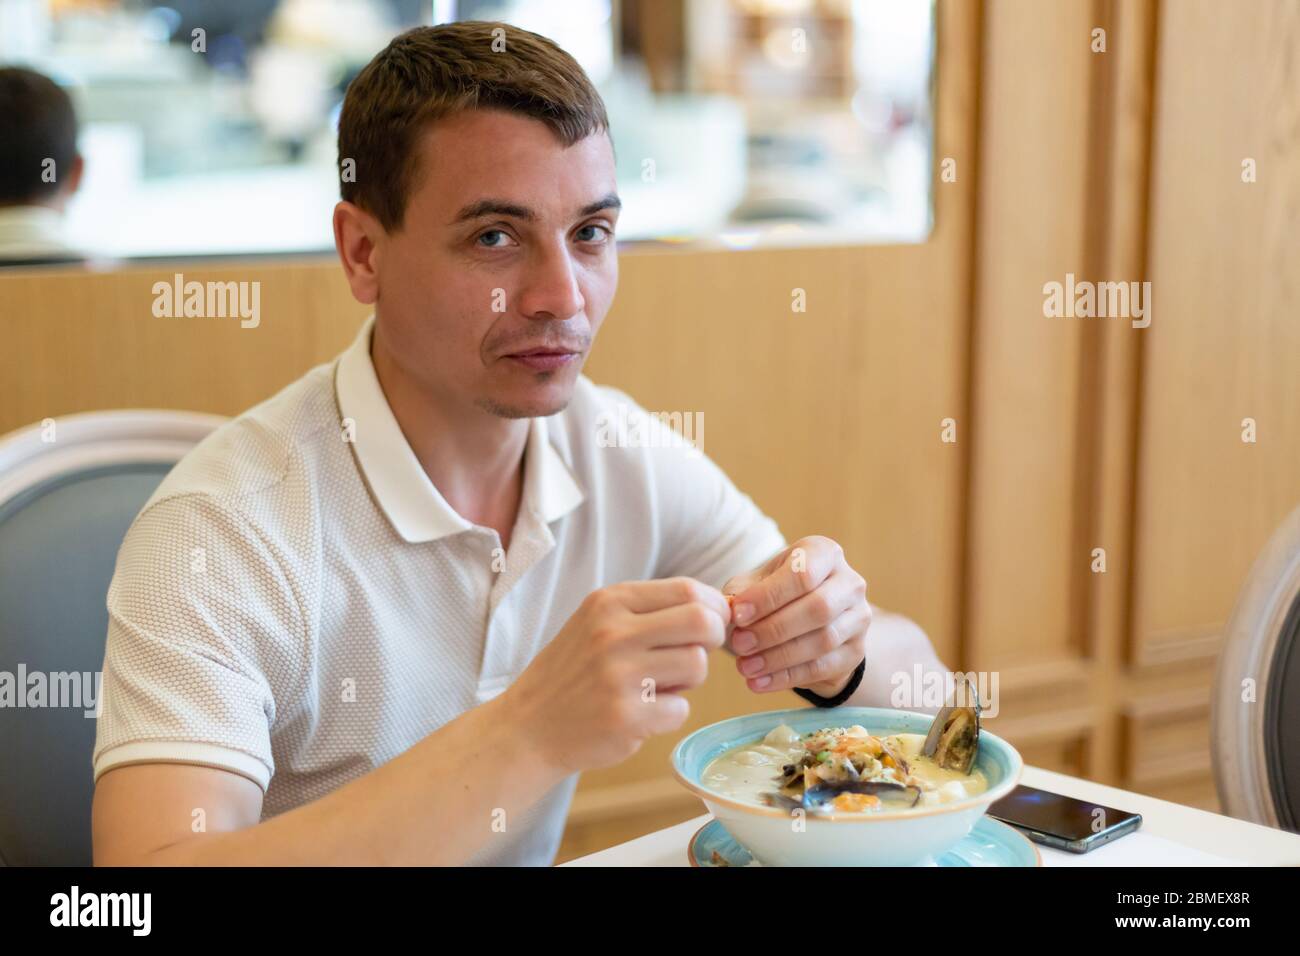 Un homme européen adulte de 30-35 ans mange de la soupe de fruits de mer dans un restaurant. Banque D'Images